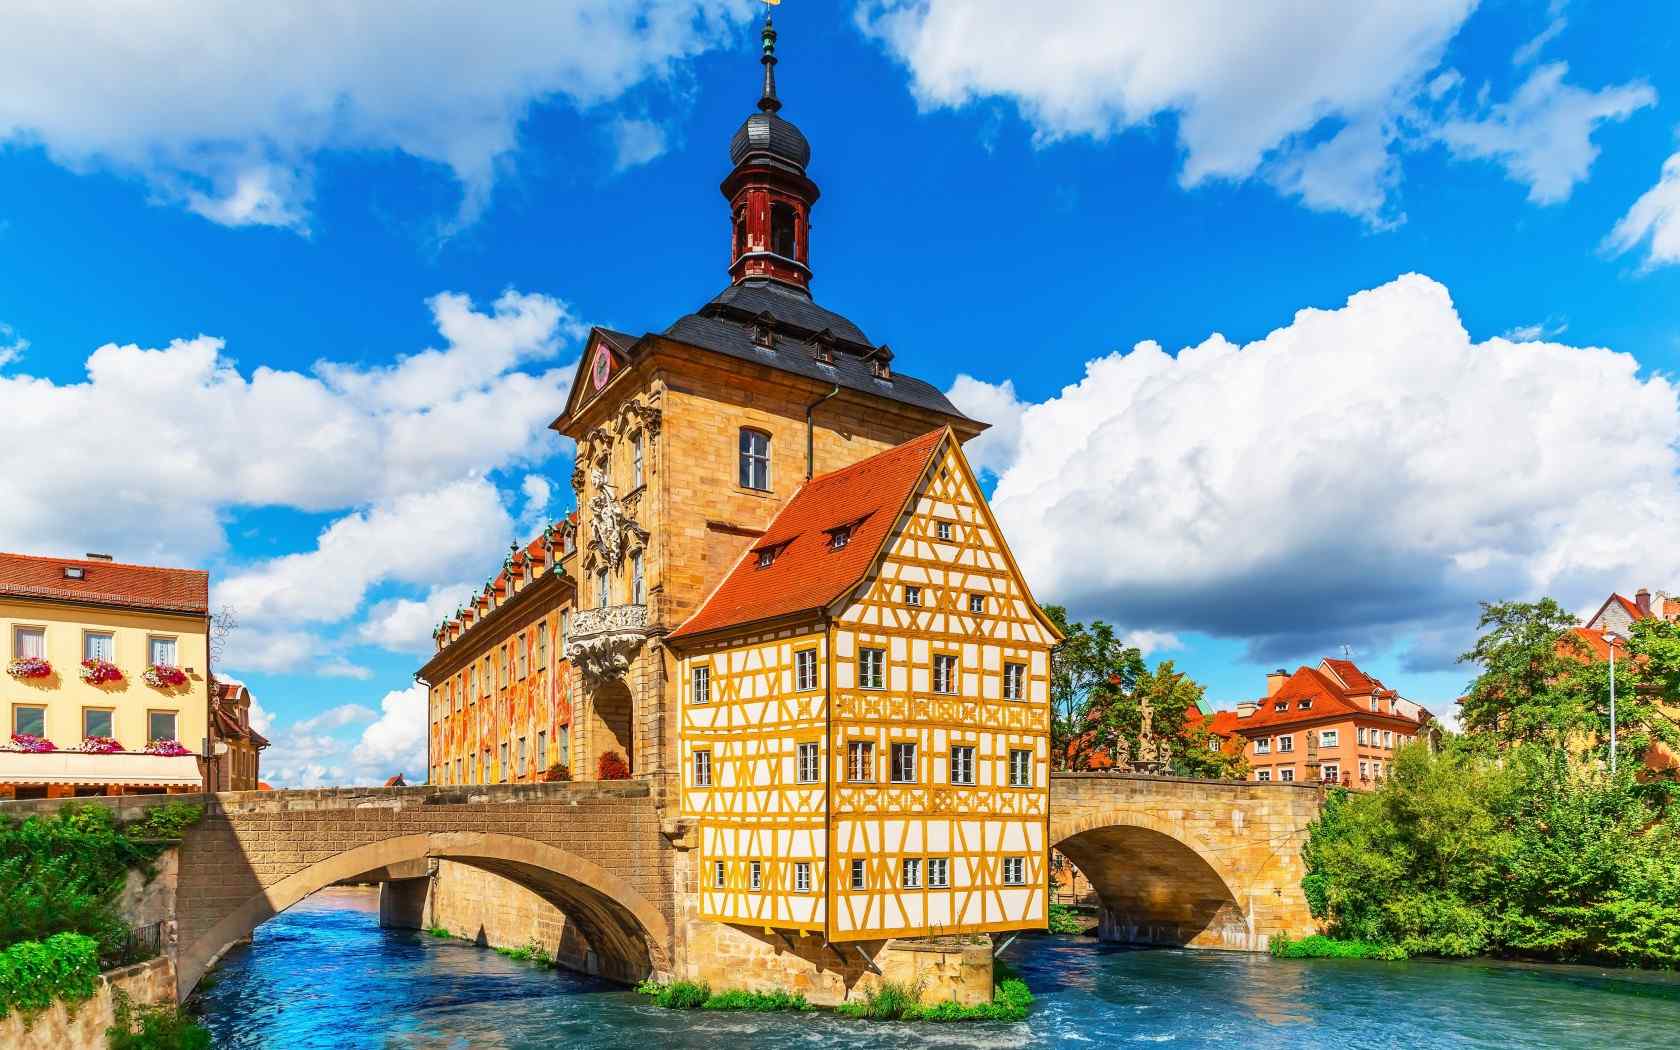 美丽的国外风景德国风情唯美高清图片桌面壁纸第二辑